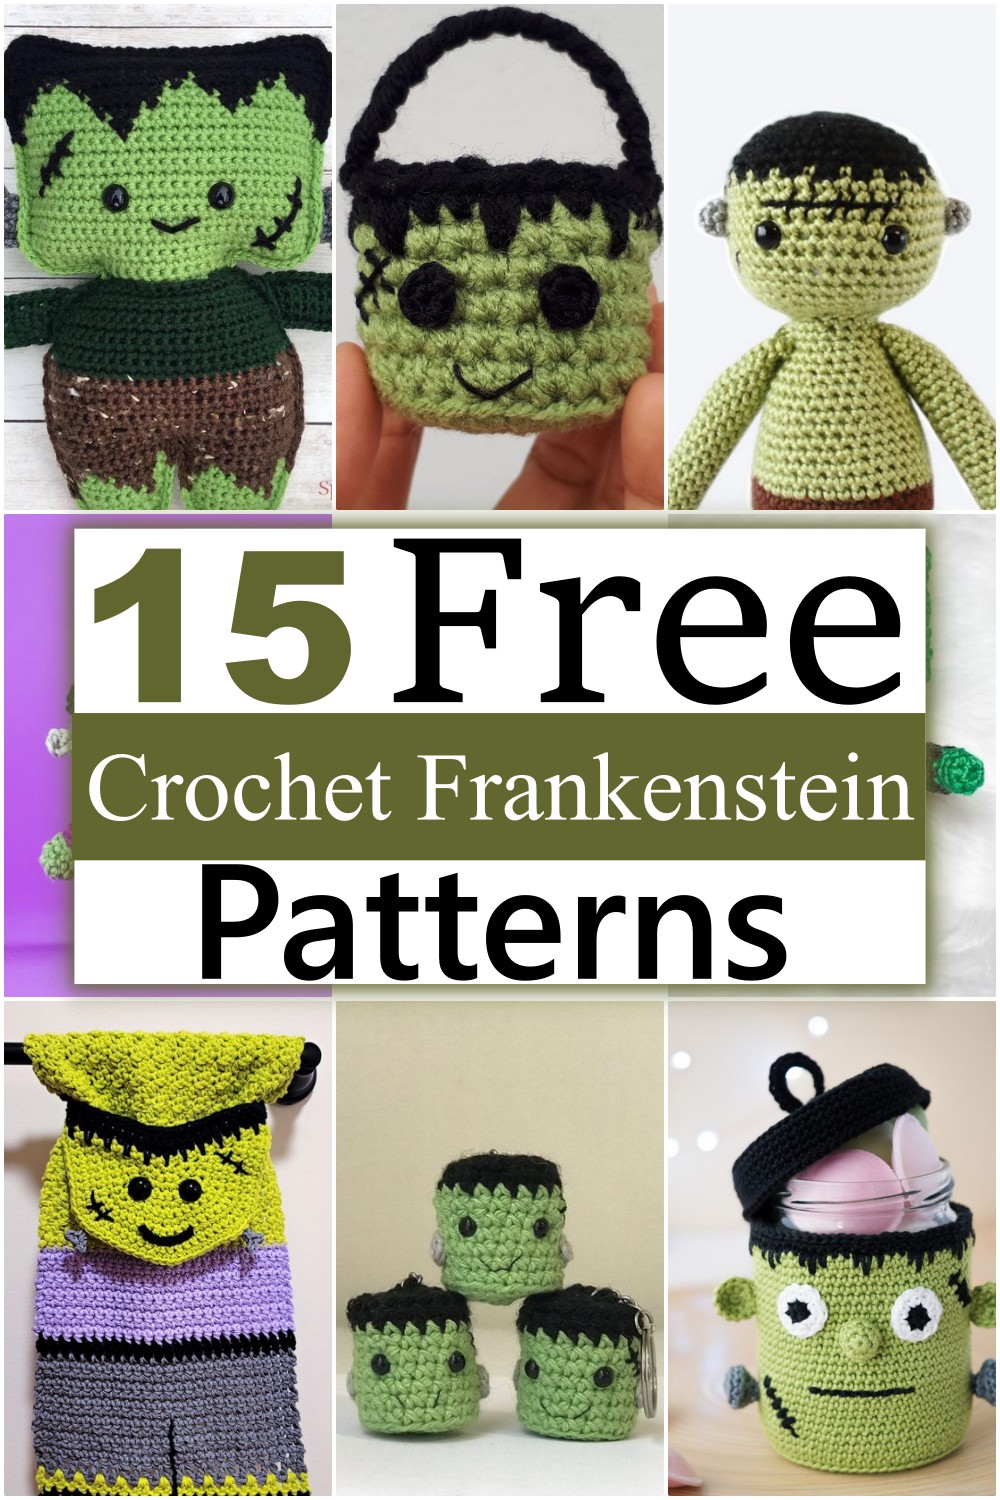 Free Crochet Frankenstein Patterns